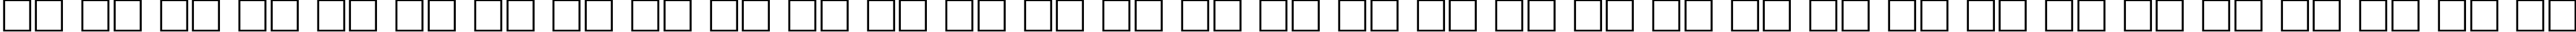 Пример написания русского алфавита шрифтом Antiqua 105b